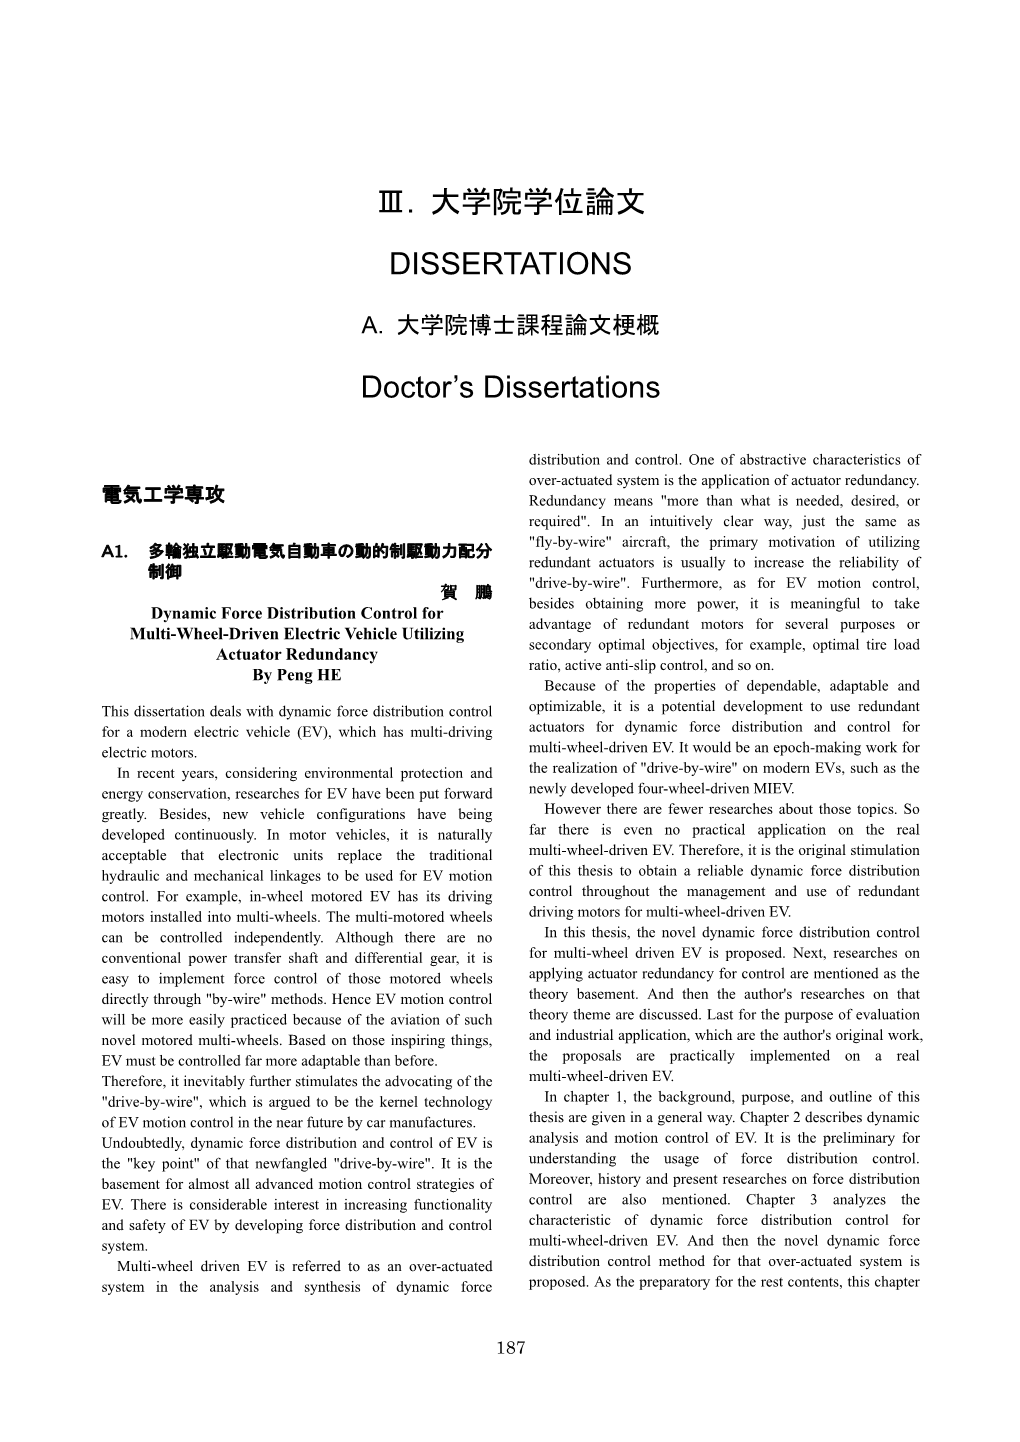 Ⅲ. 大学院学位論文 DISSERTATIONS Doctor's Dissertations